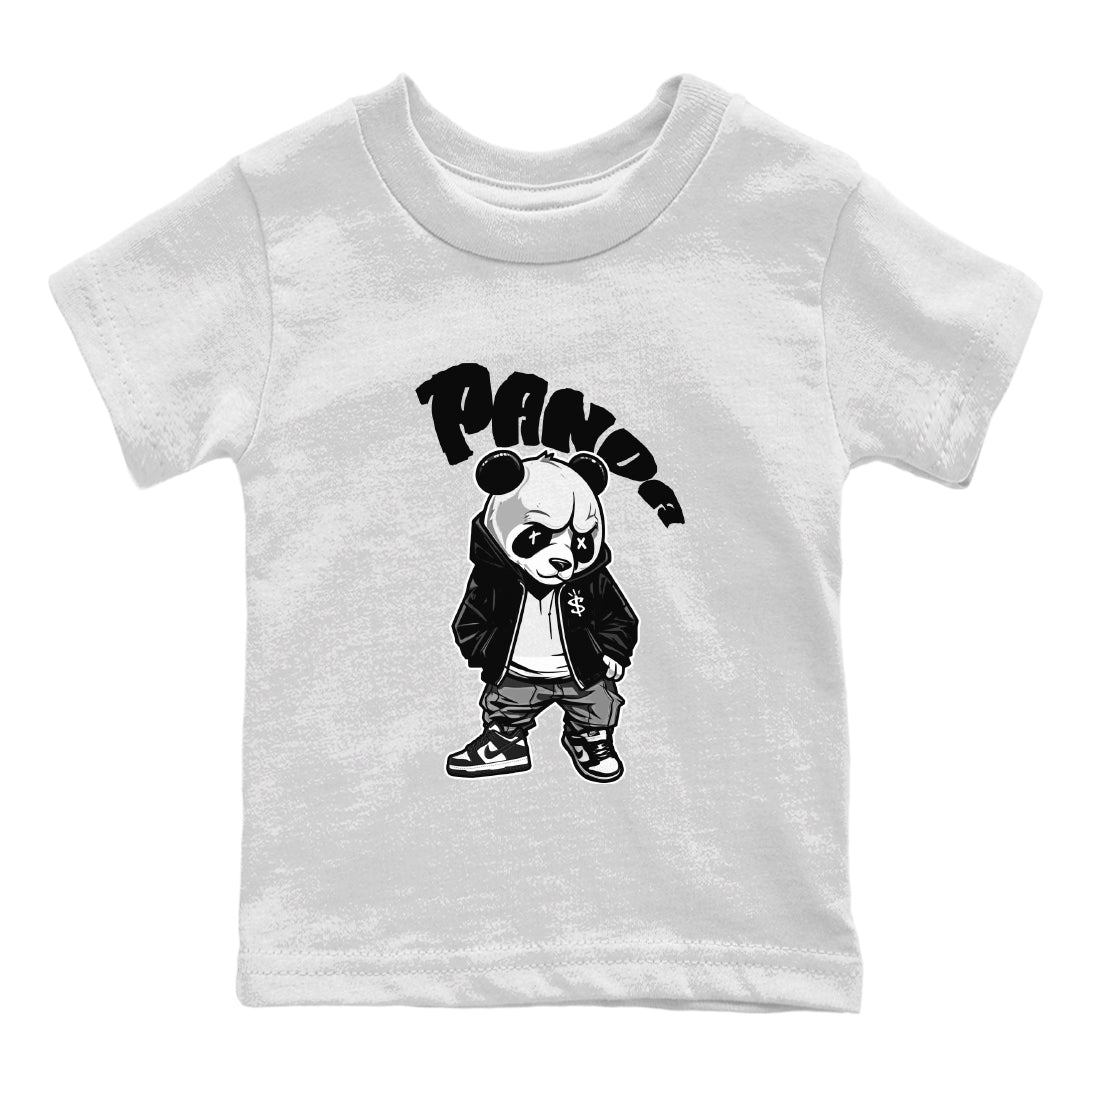 Dunk Panda Sneaker Match Tees Bastard Panda Sneaker Tees Dunk Low White Black SNRT Sneaker Release Tees Kids Shirts White 2